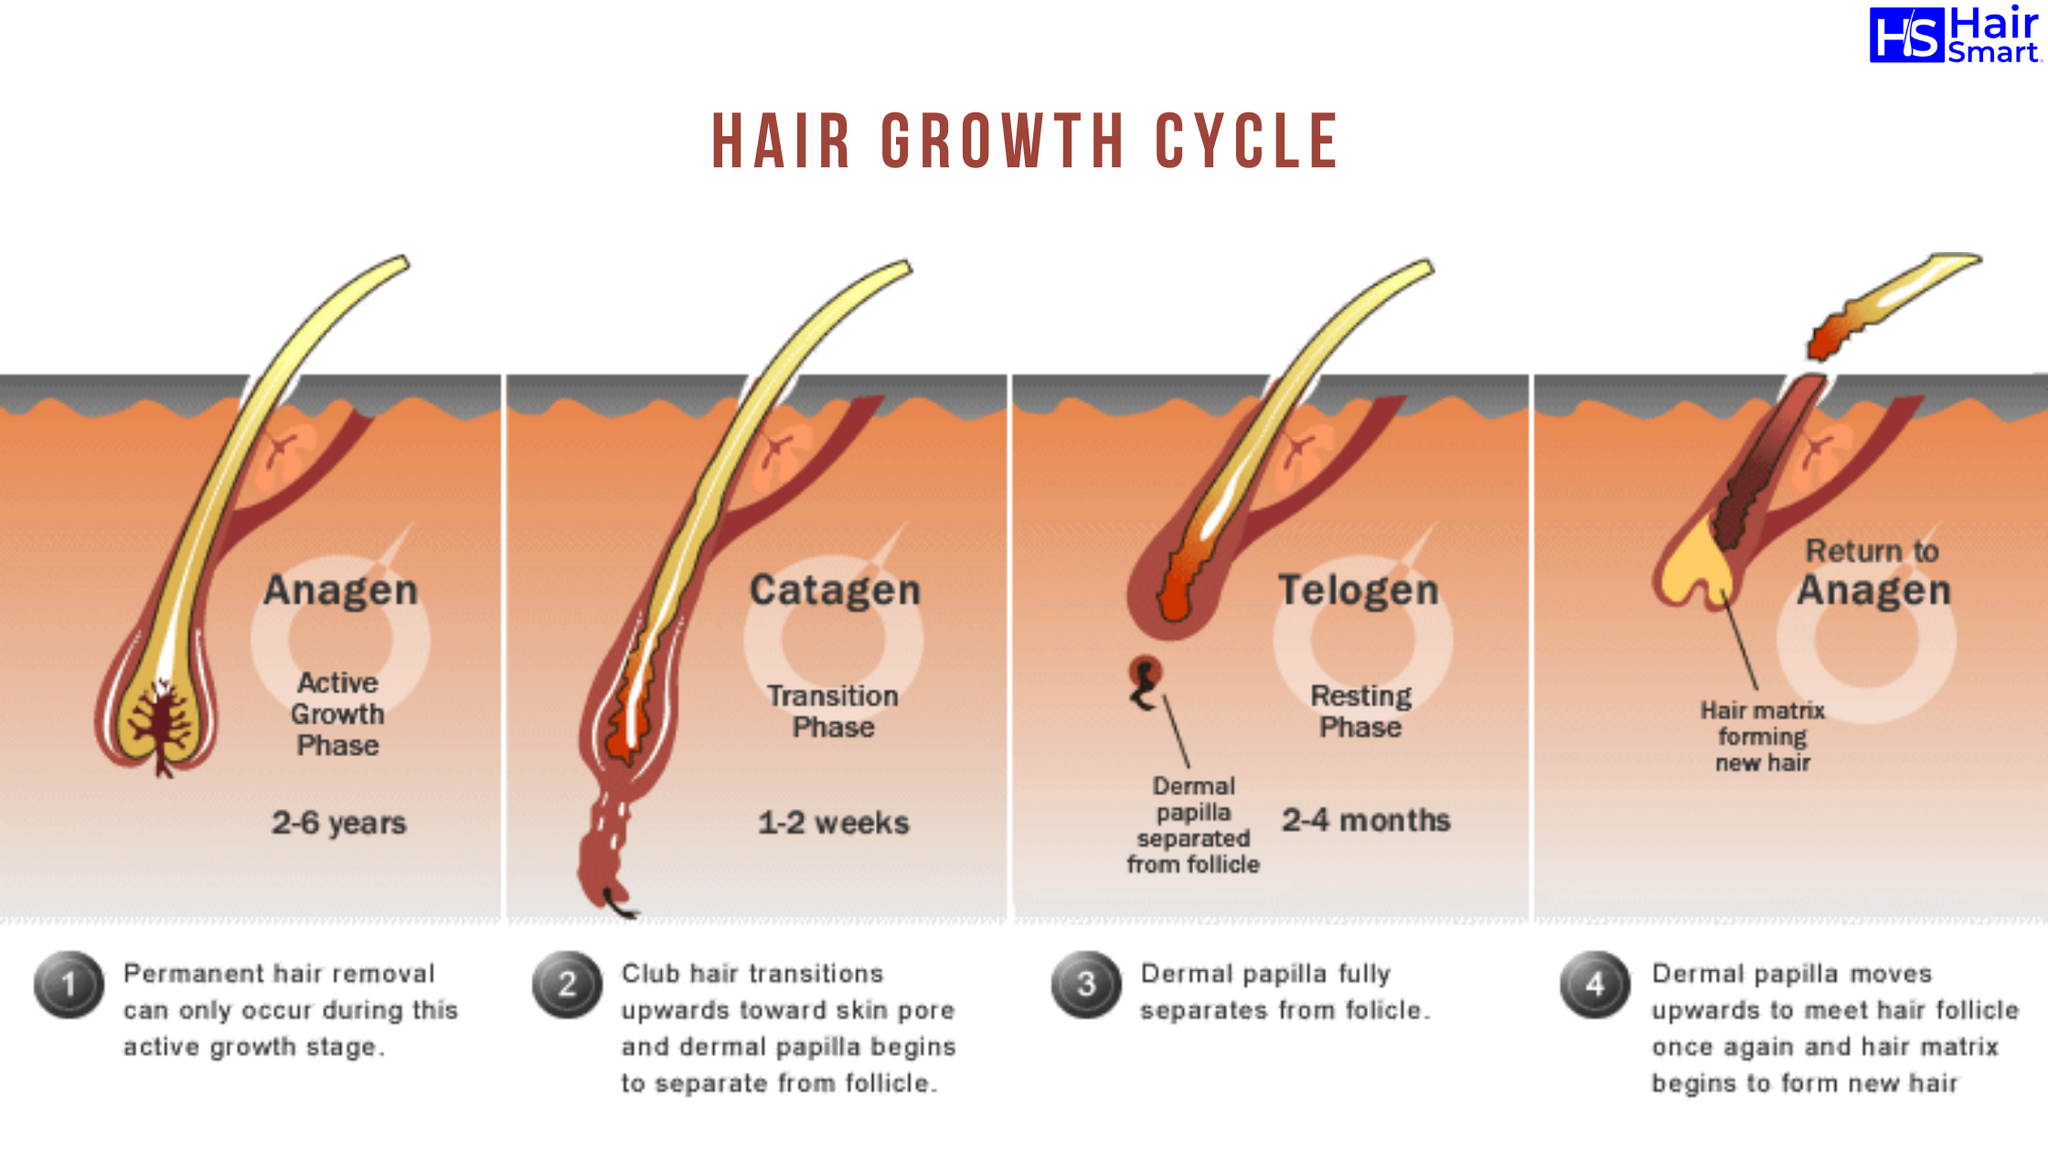 Почему воняет волосы. Ресницы анаген катаген. Строение волоса и фазы роста. Анаген катаген телоген волос. Катаген фаза роста волос.